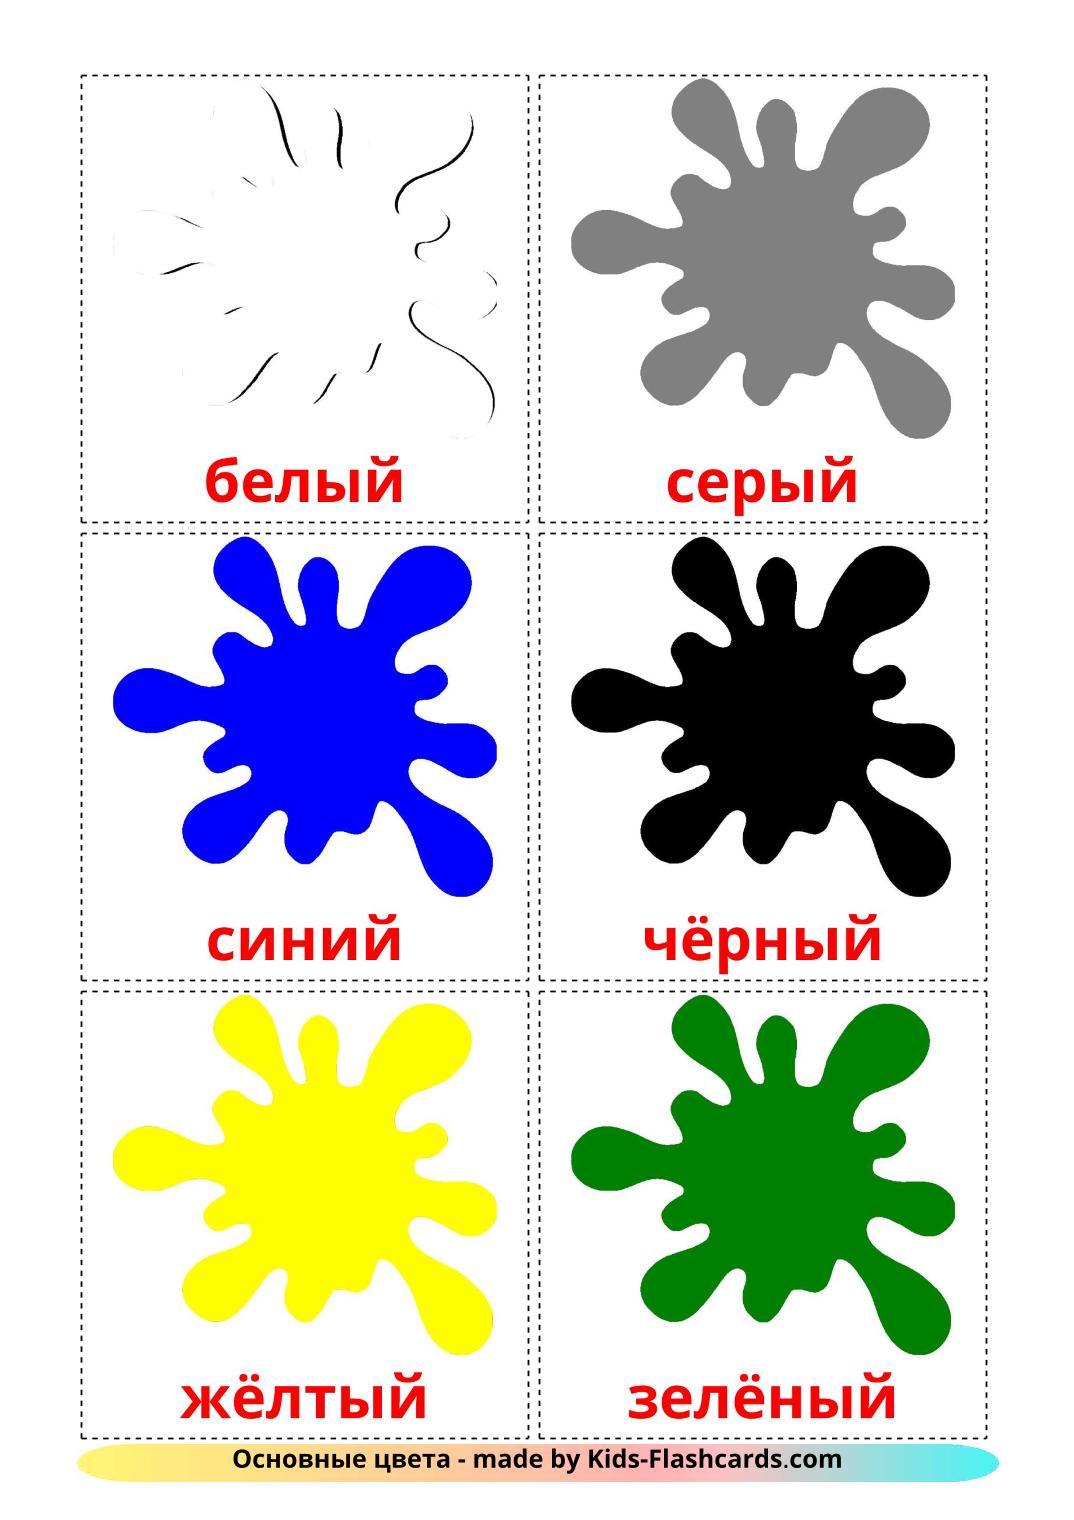 Основные цвета - 12 Карточек Домана на русском